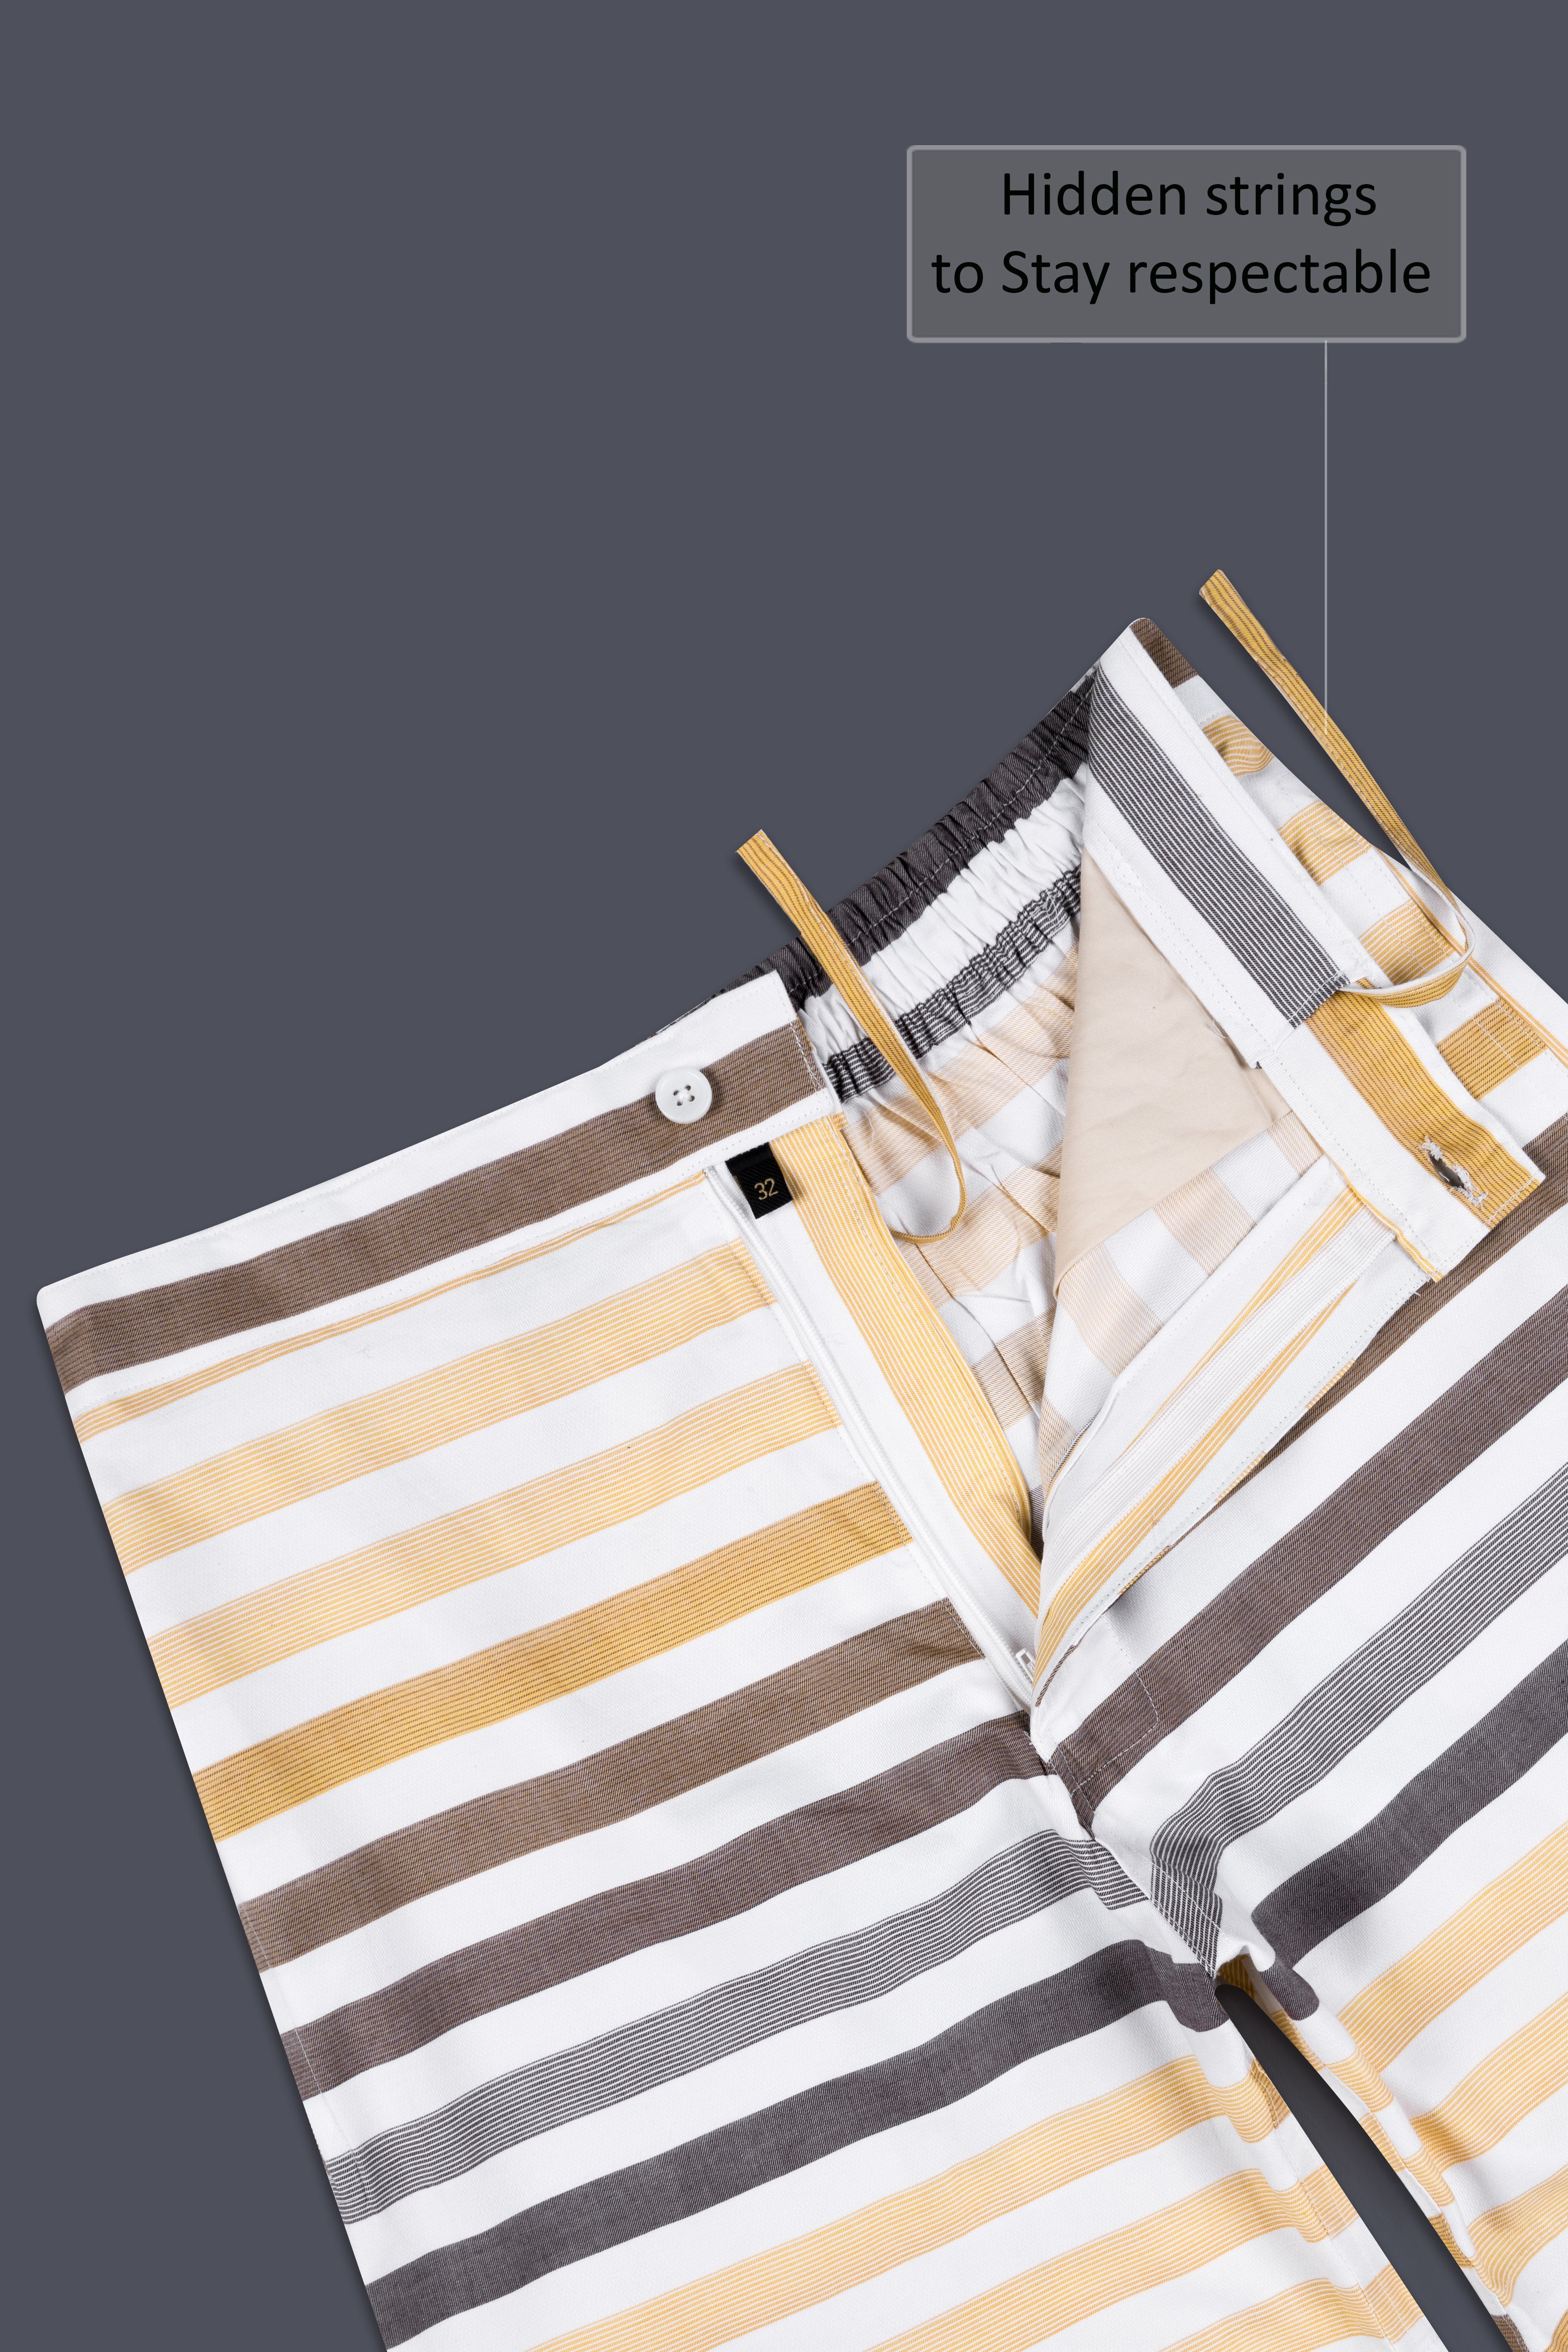 Bright White and Pavlova Cream Multicolour Striped Dobby Textured Giza Cotton Shorts SR374-28, SR374-30, SR374-32, SR374-34, SR374-36, SR374-38, SR374-40, SR374-42, SR374-44